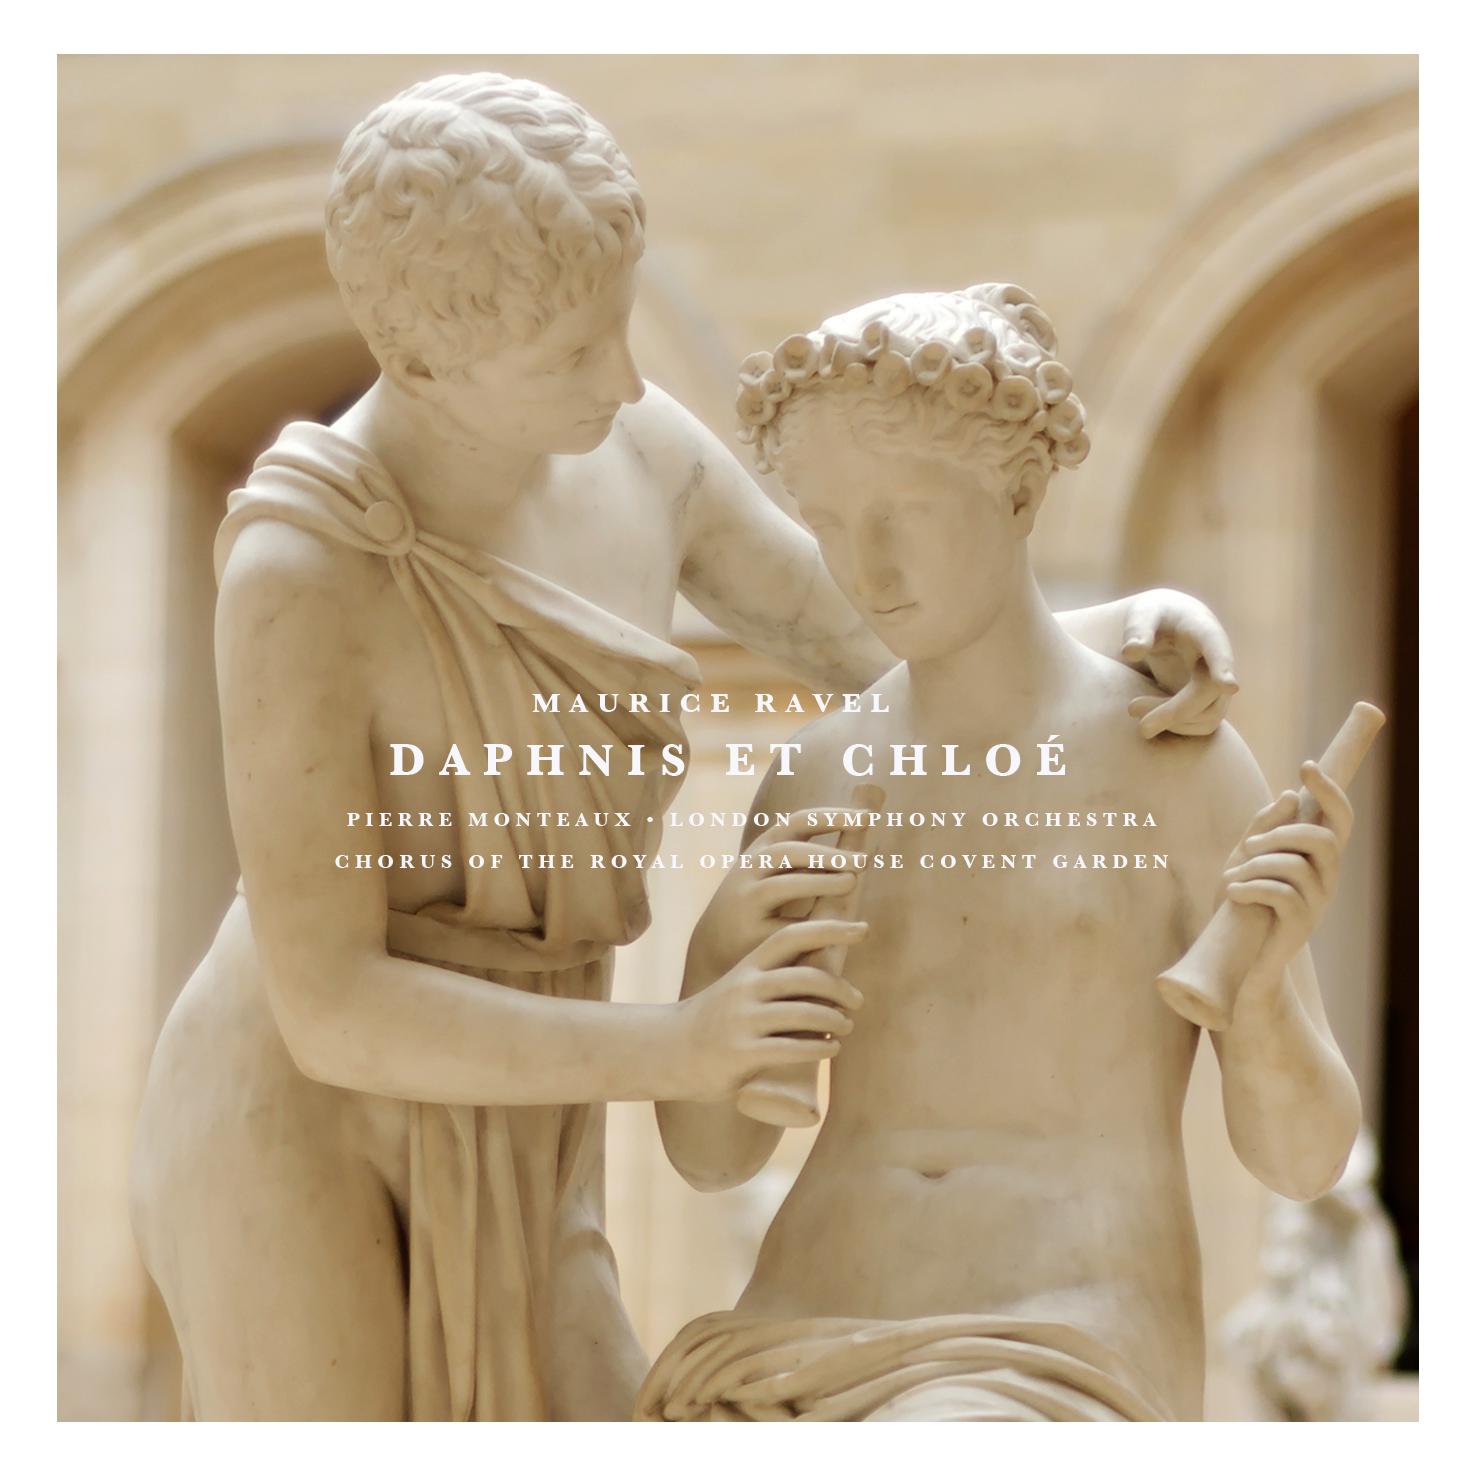 Daphnis Et Chloe: Part II " Danse guerrie re"